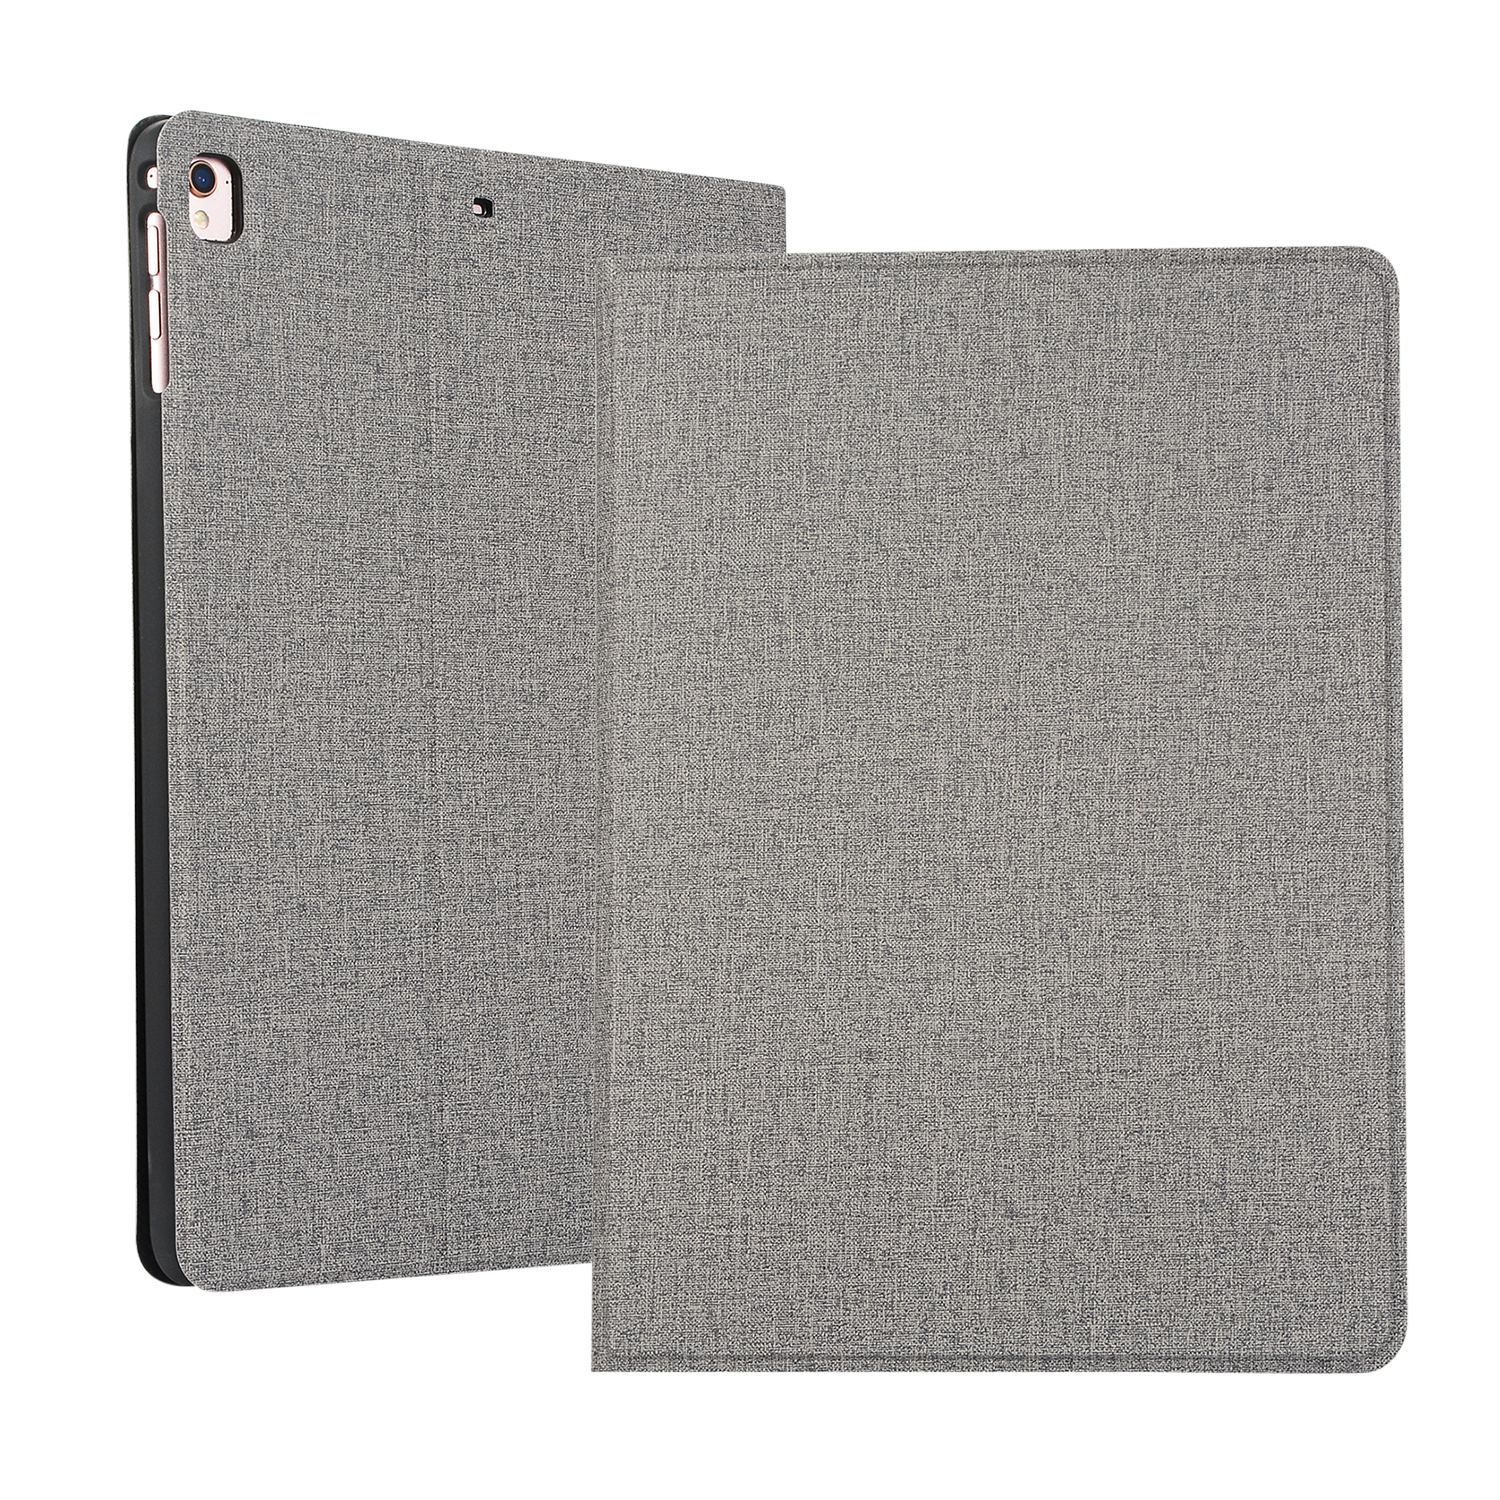 Bookcover Schutzhülle 2019/2020/2021 10.5 Grau Kunststoff, Apple 10.5 Pro LOBWERK 3 10.2 2017 Ipad Air Hülle Zoll 2019 für